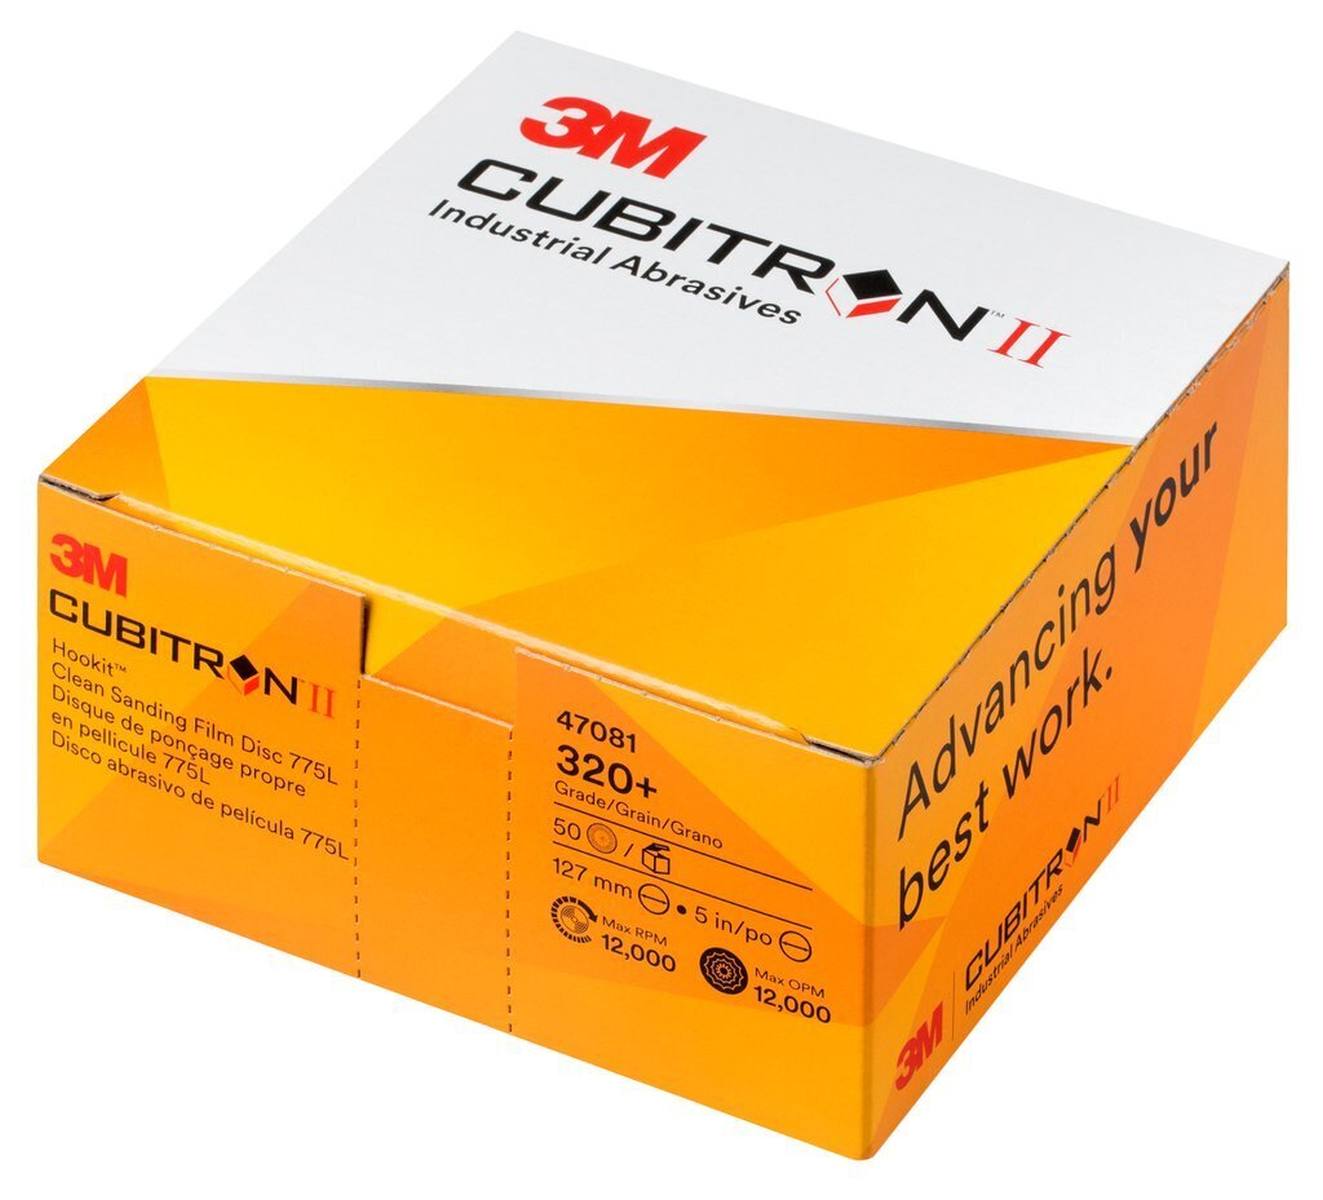 3M Cubitron II Hookit Filmscheibe 775L, 125 mm, 320+, multihole #47081